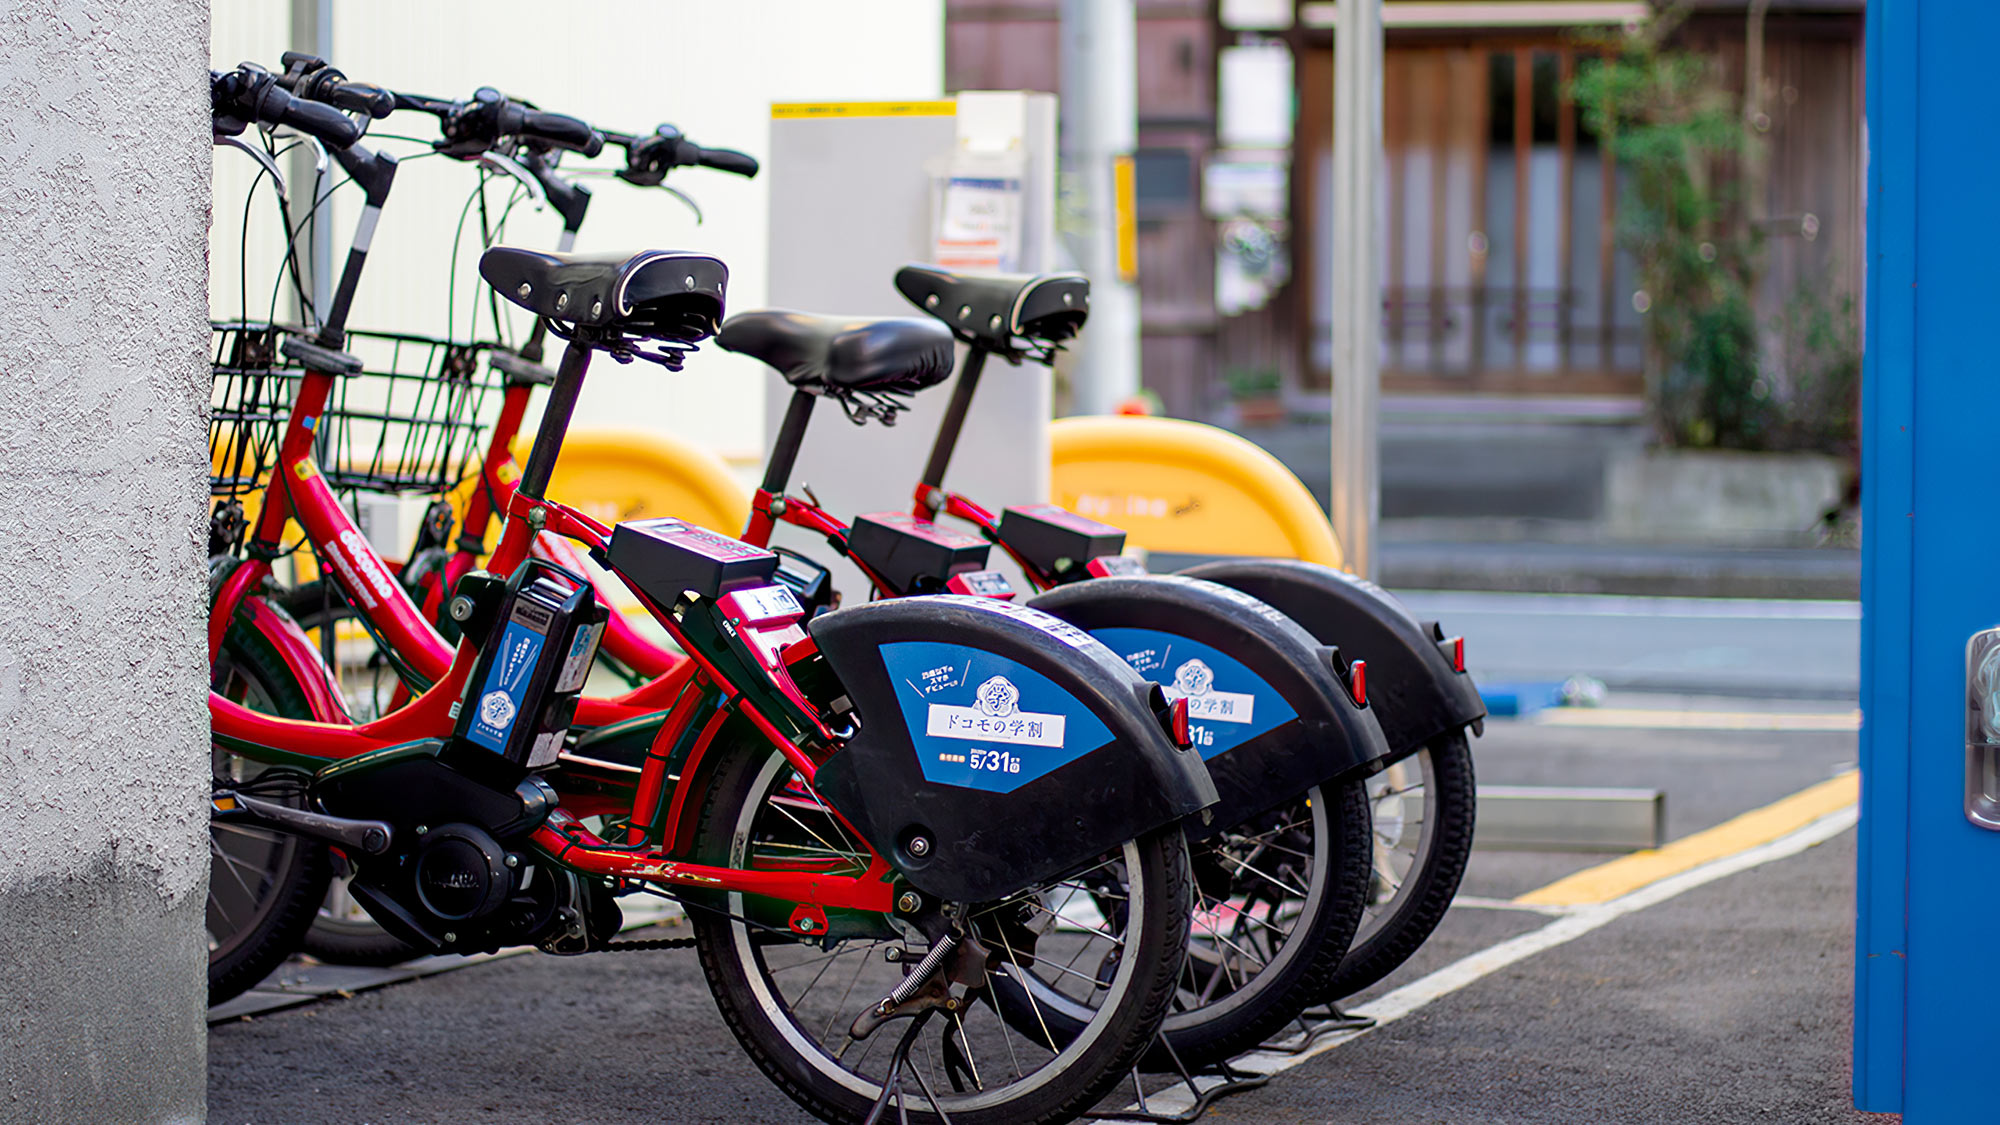 ・【OOBACOⅠ】施設隣にはレンタル自転車baybikeのポートがございます